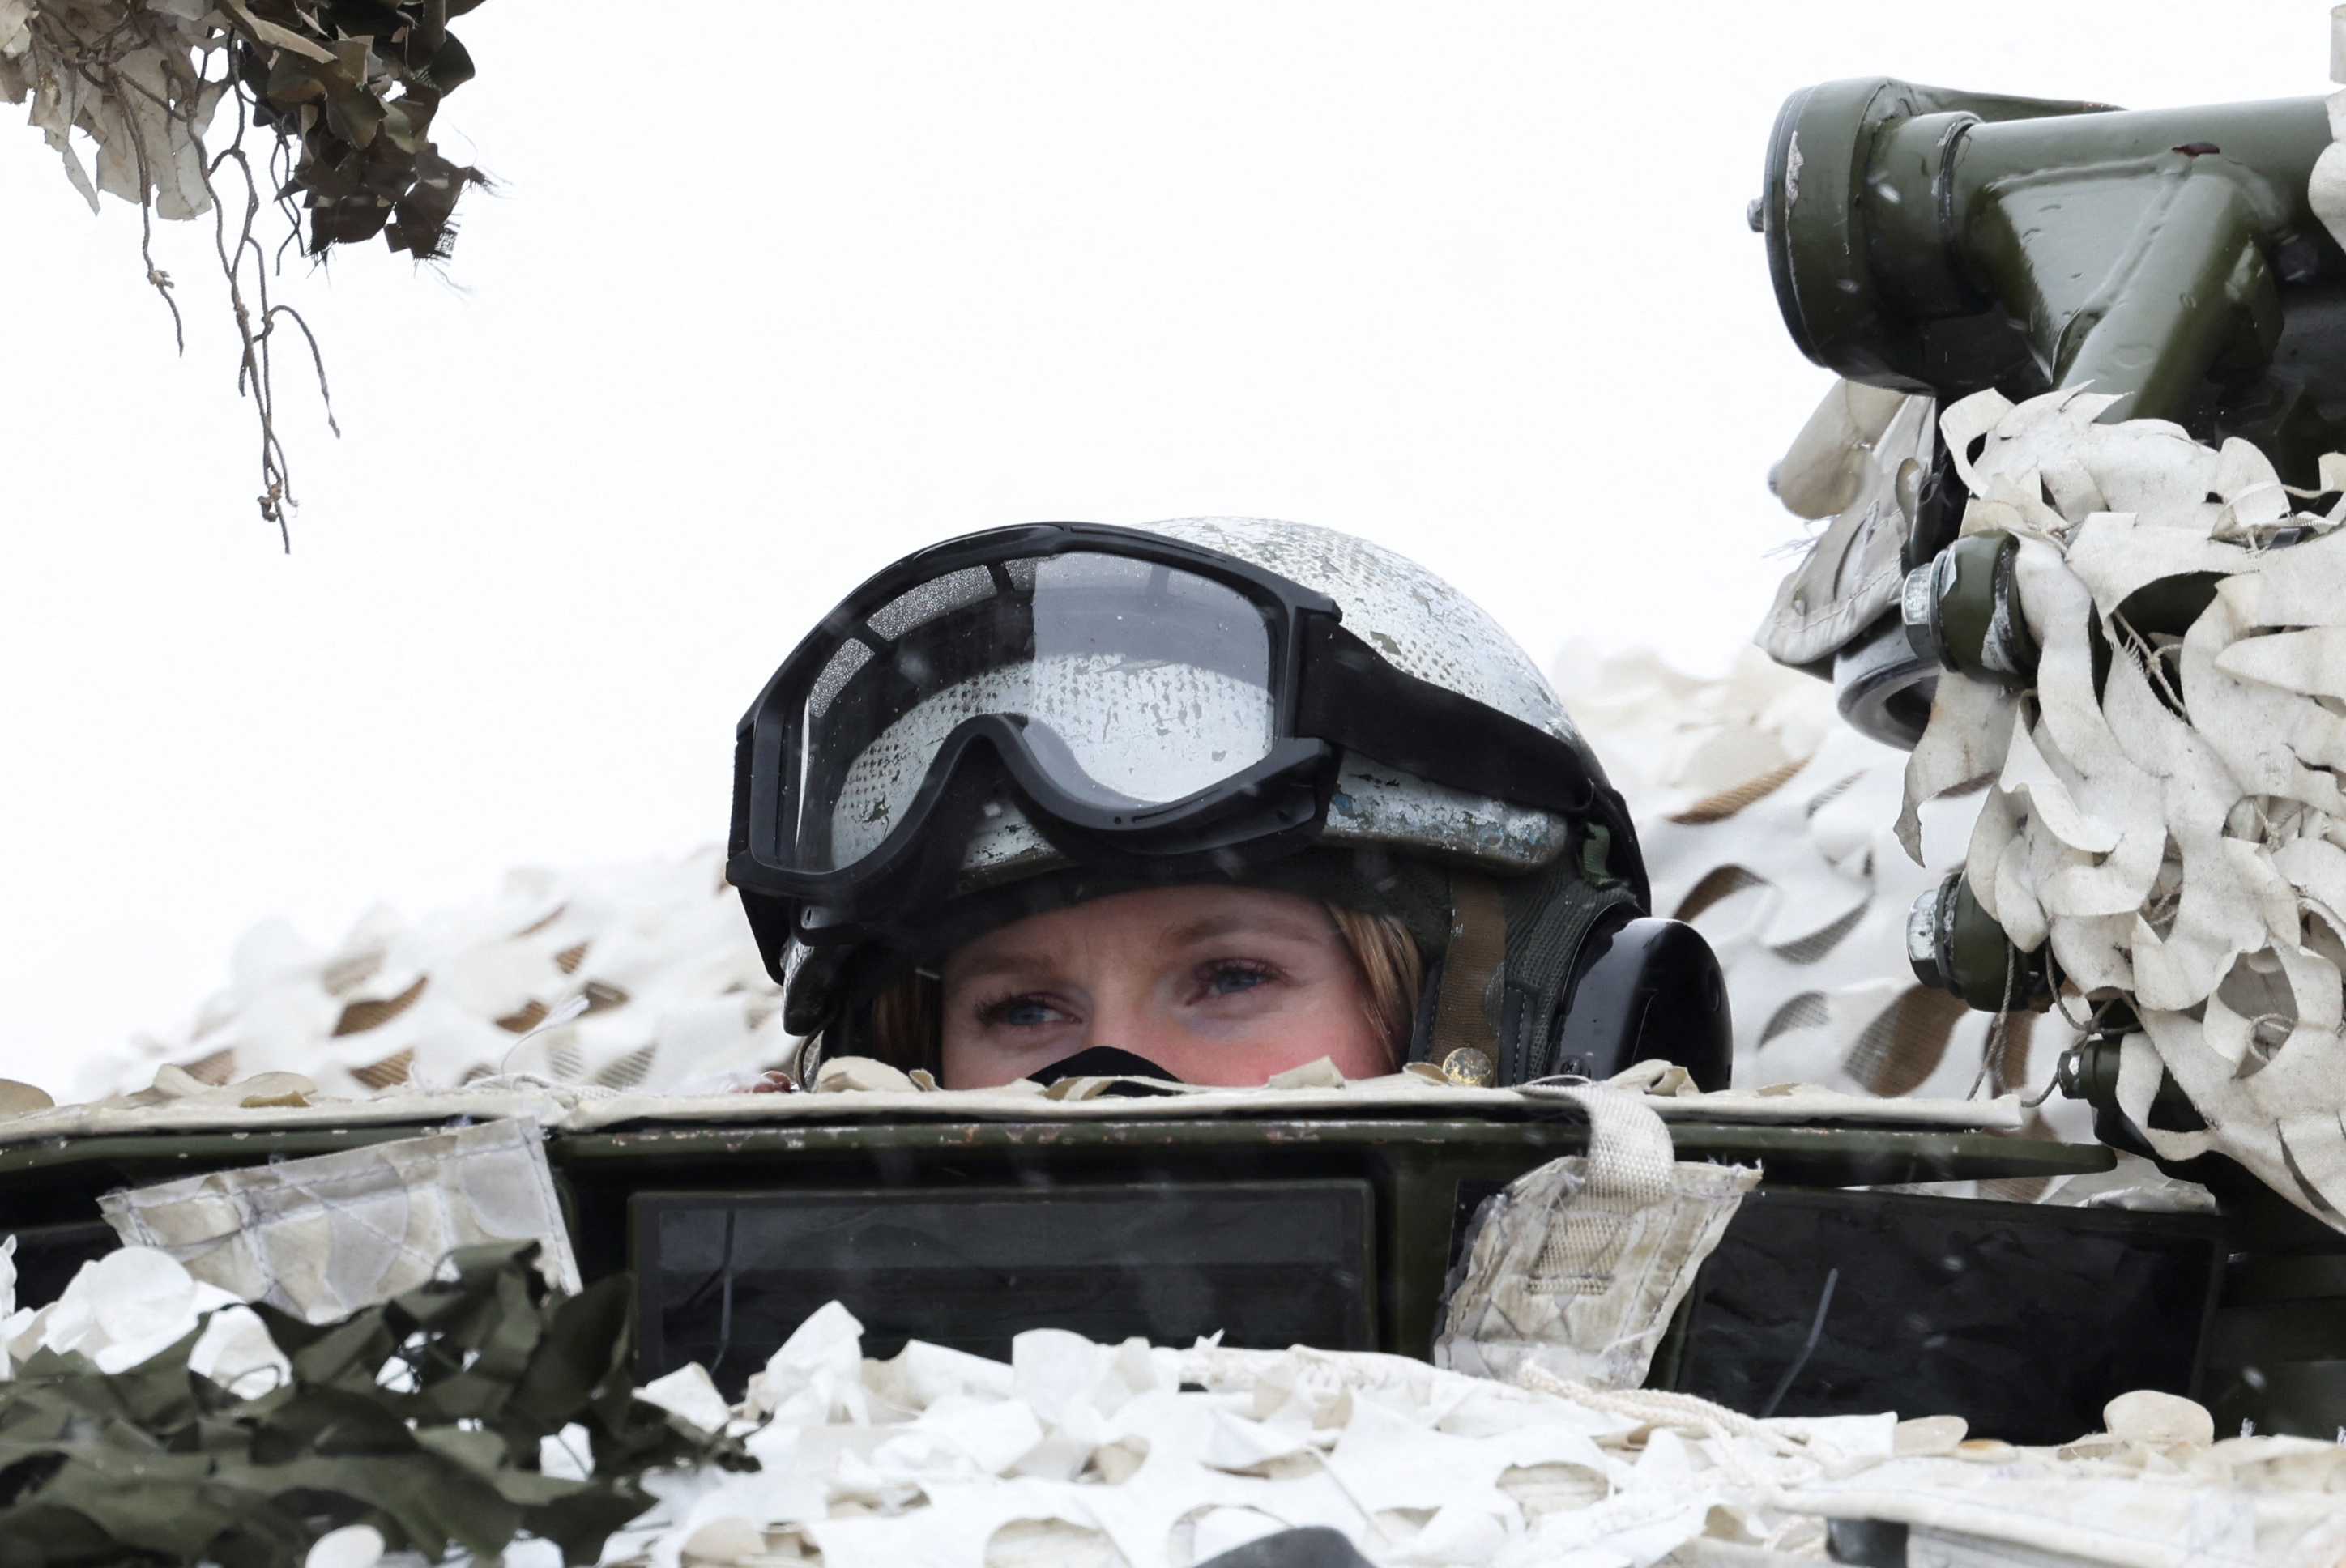 Una soldado noruega participando con sus pares de Finlandia, Suecia y otros países de la OTAN en los ejercicios "Cold Response 2022", que se llevaron a cabo en Setermoen, dentro del Círculo Ártico. REUTERS/Yves Herman